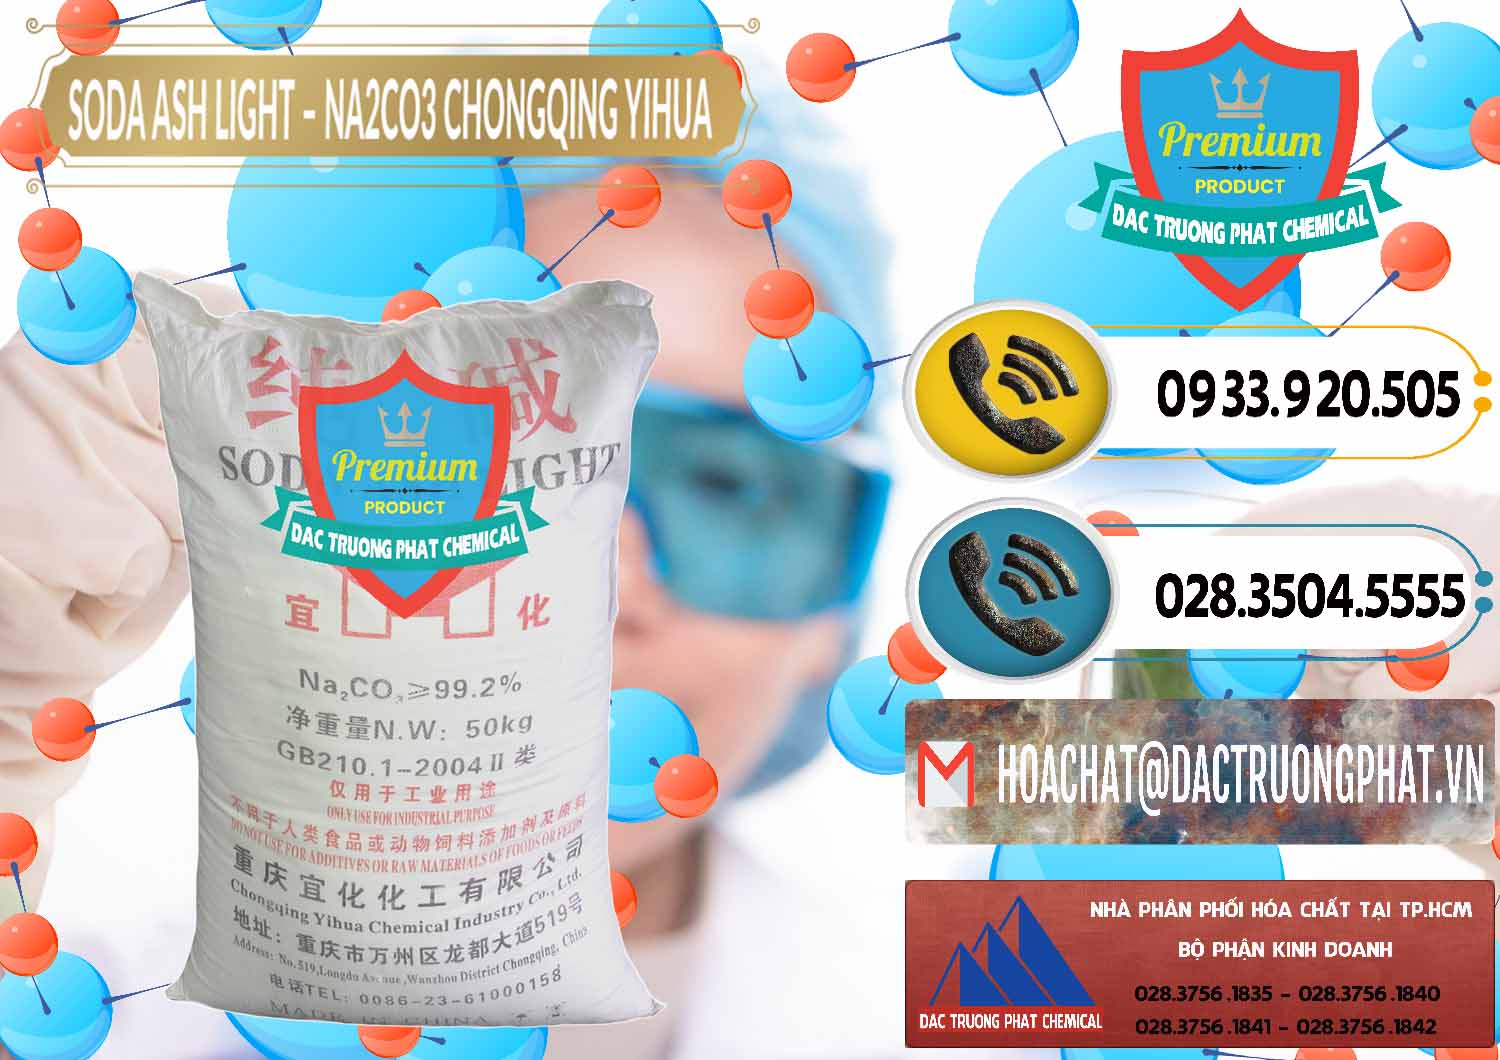 Chuyên cung cấp _ bán Soda Ash Light - NA2CO3 Chongqing Yihua Trung Quốc China - 0129 - Đơn vị phân phối ( cung cấp ) hóa chất tại TP.HCM - hoachatdetnhuom.vn